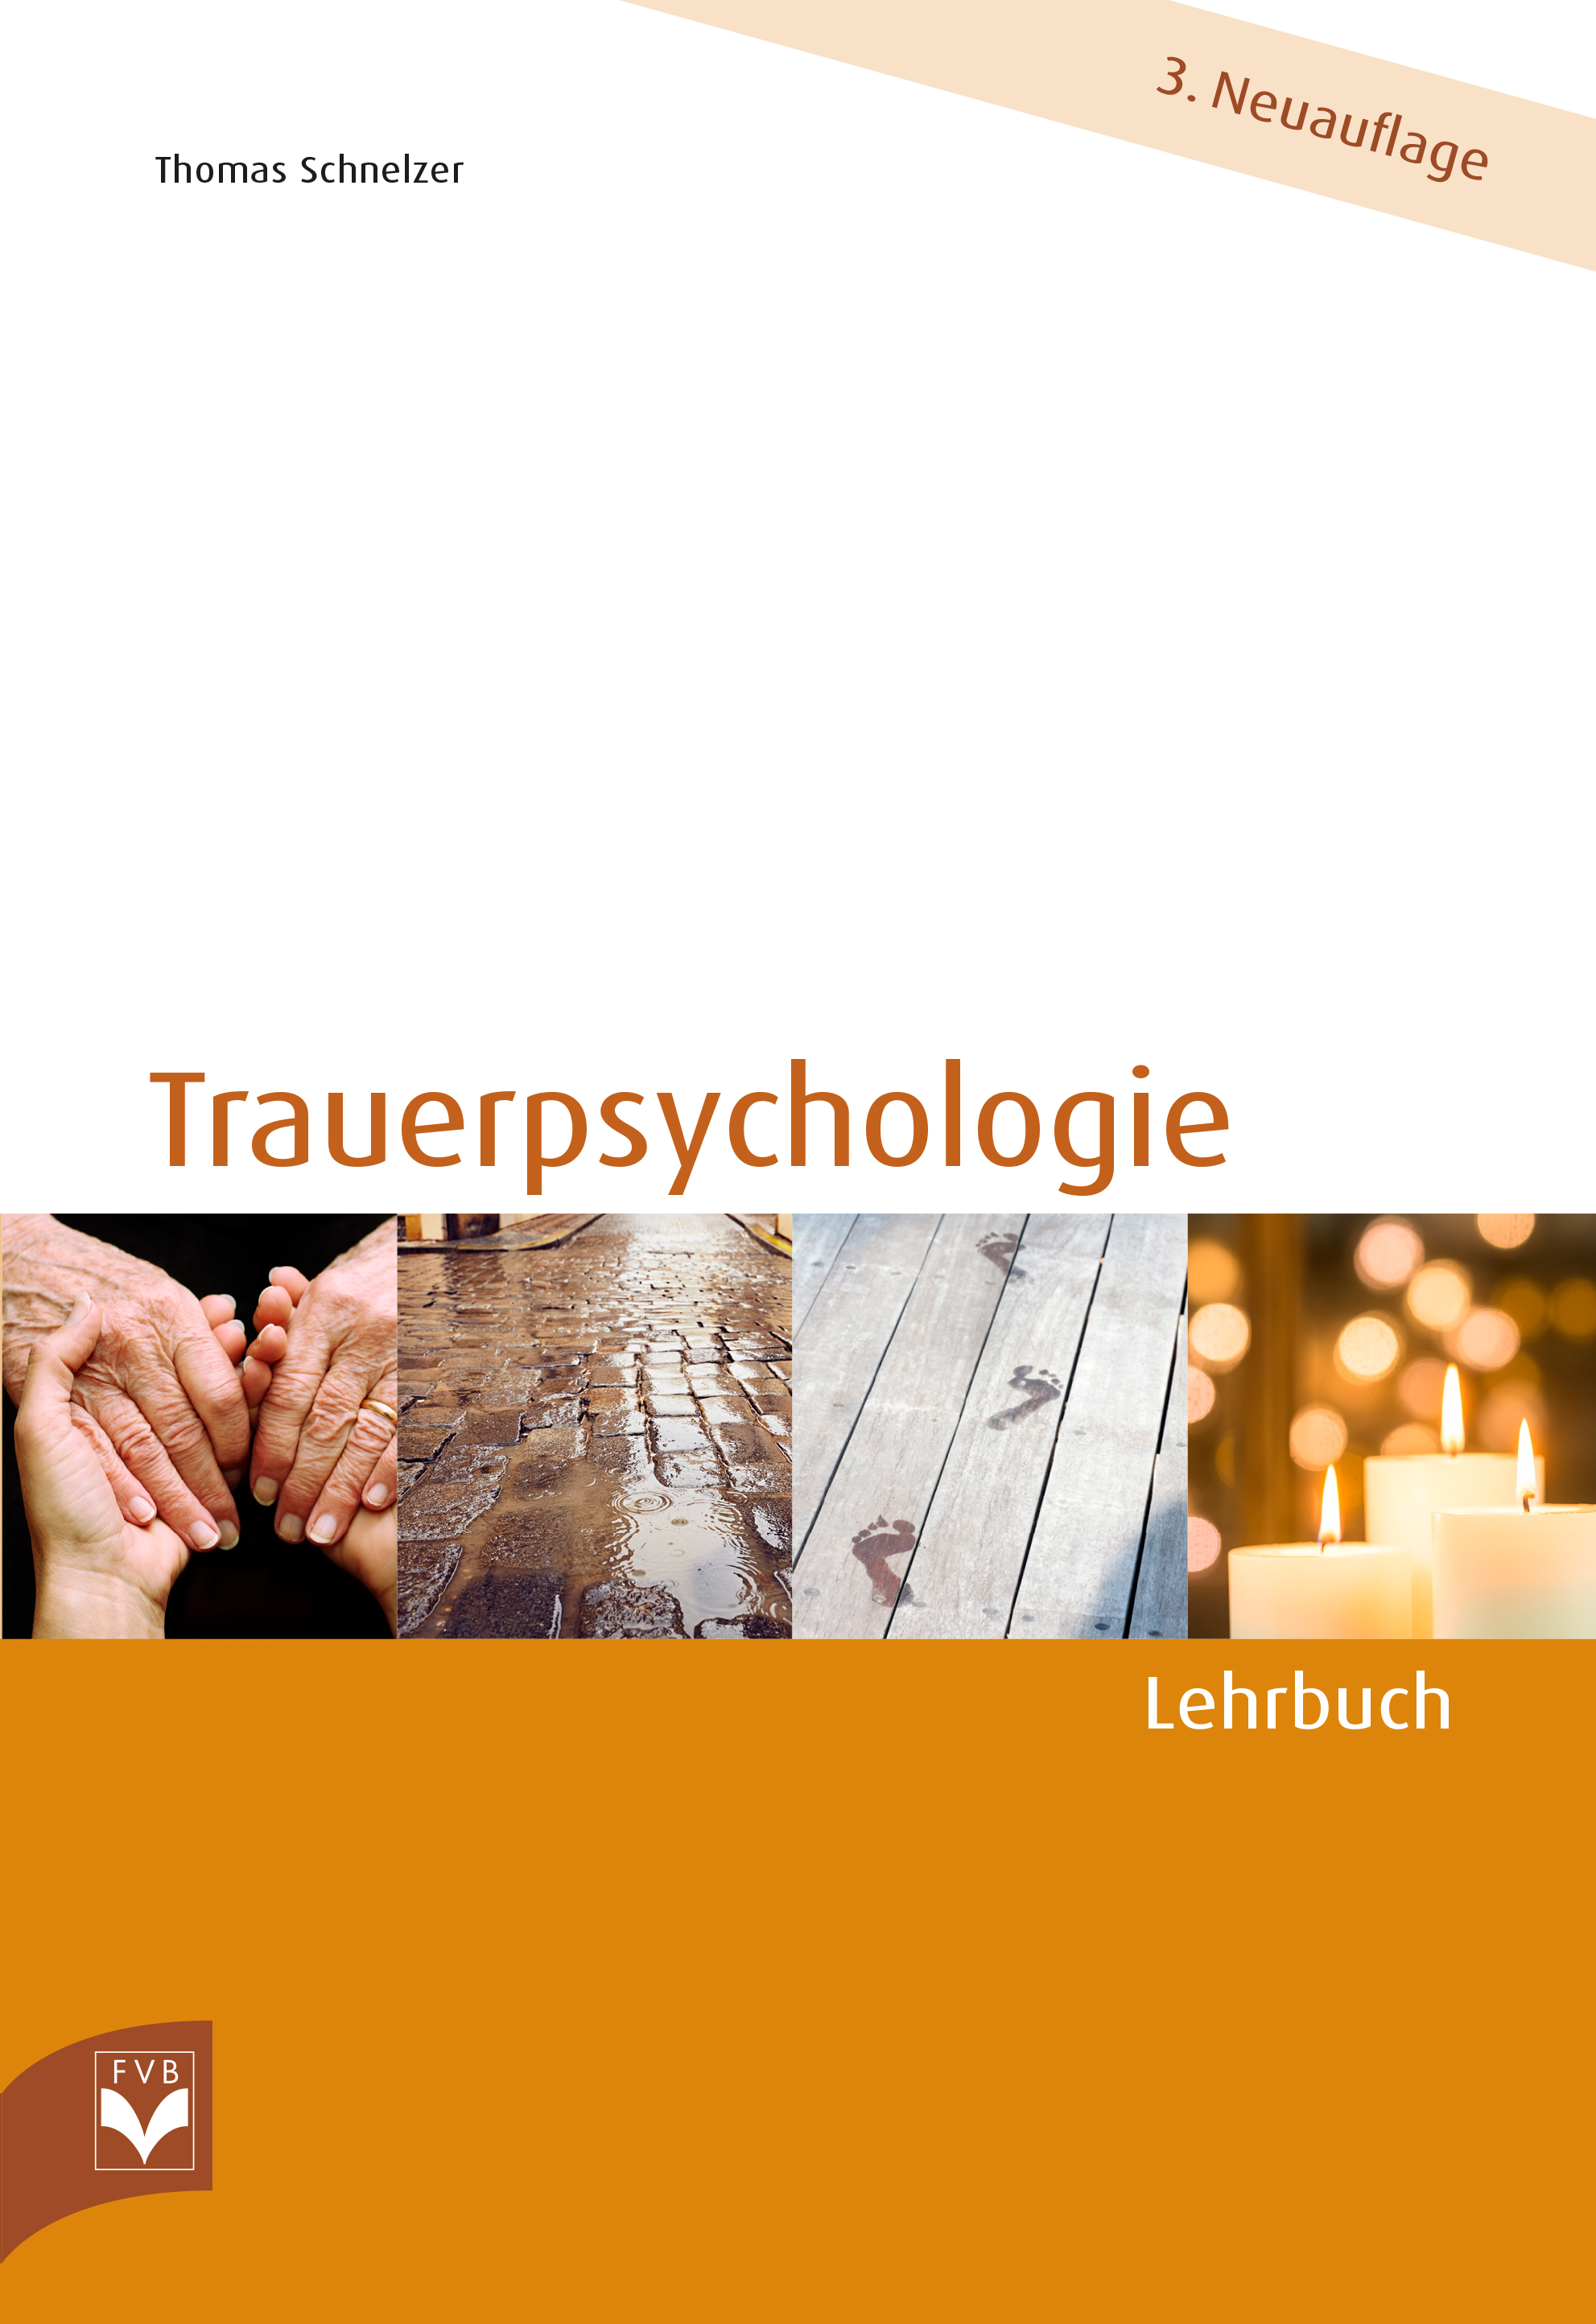 Trauerpsychologie – Lehrbuch - Zur Zeit nicht lieferbar,  voraussichtlich ab dem 16.02.2023 wieder lieferbar!